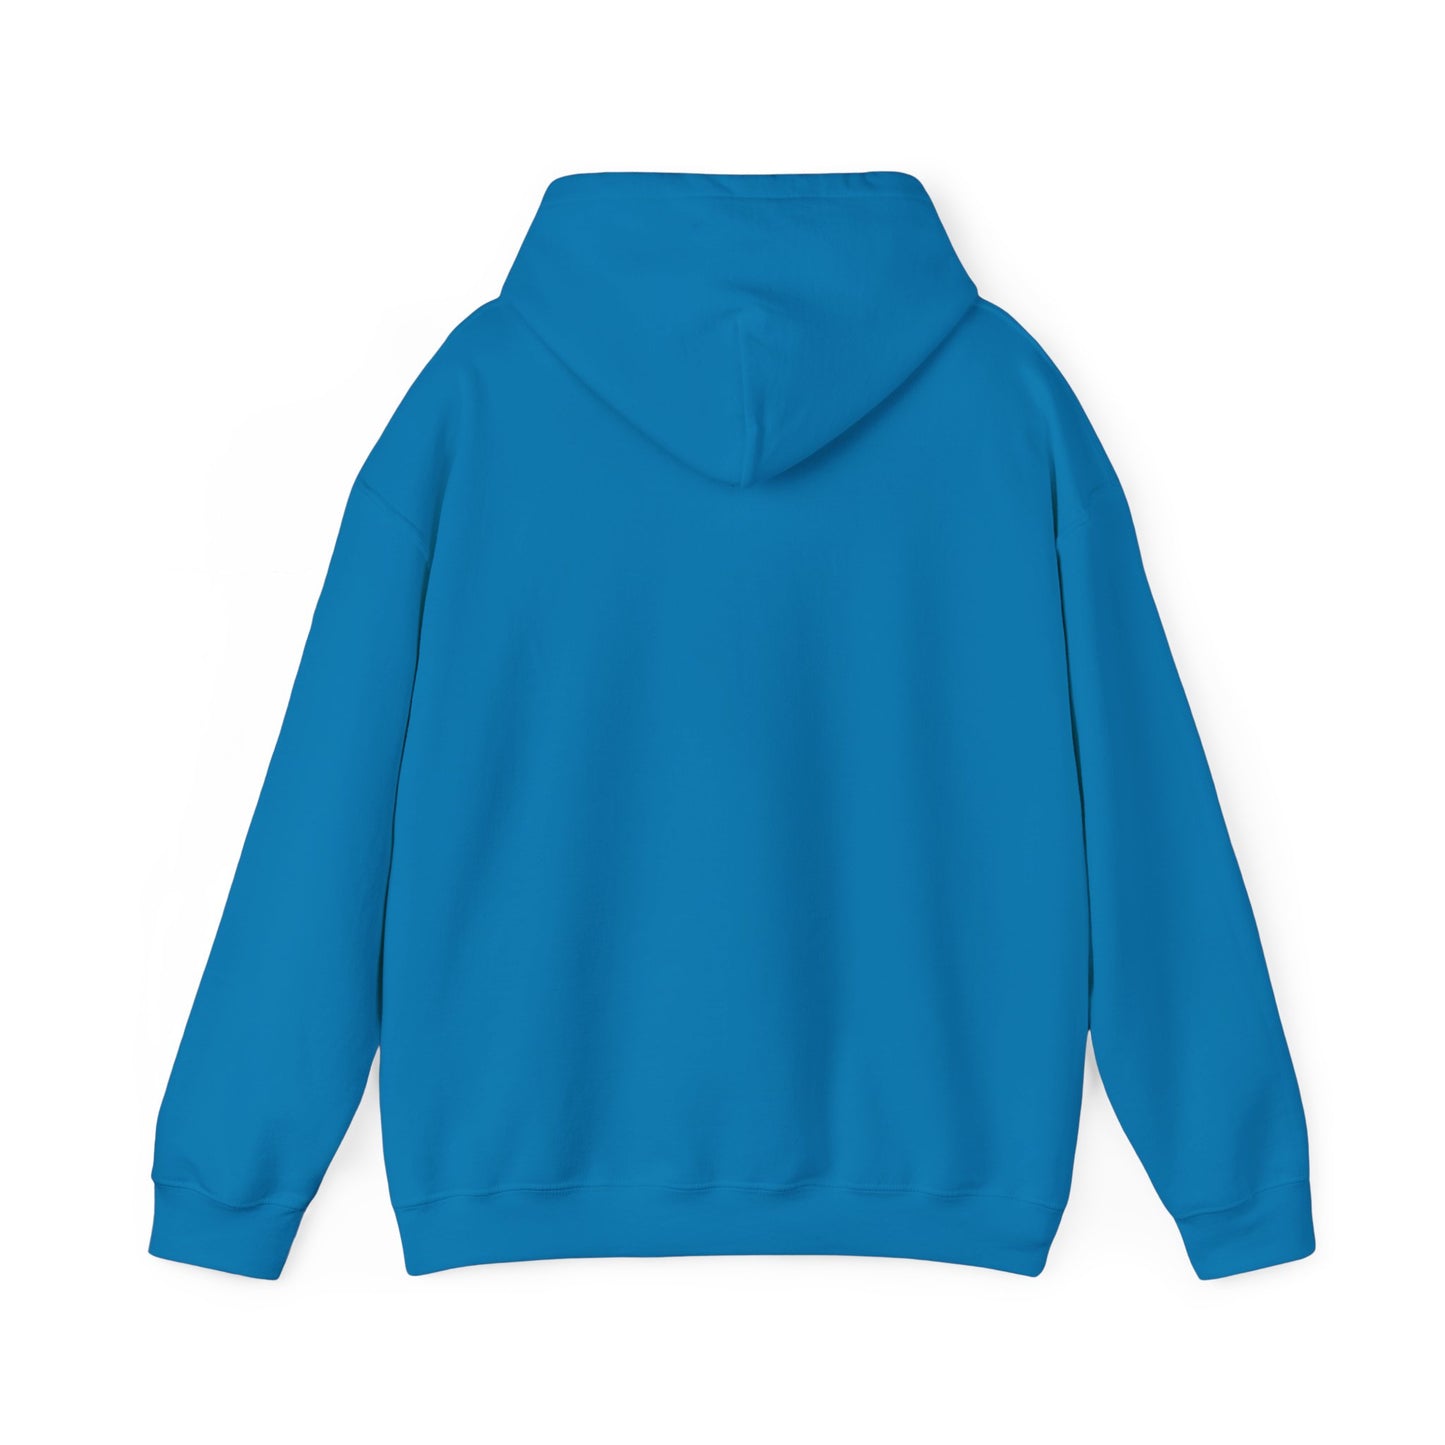 Chipmunk design Unisex Heavy Blend™ Hooded Sweatshirt